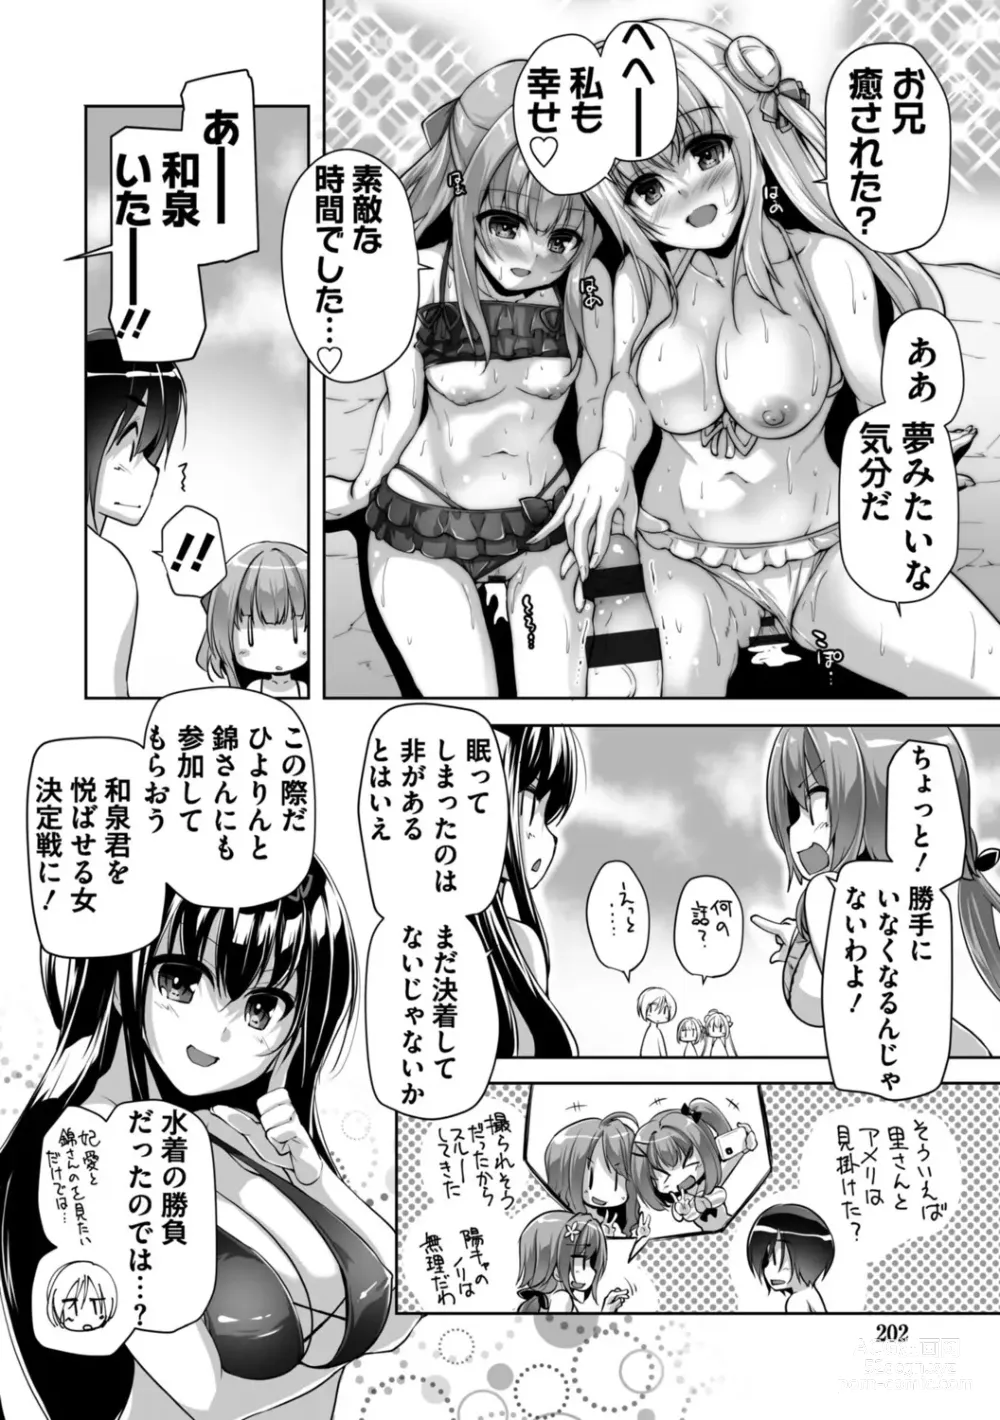 Page 202 of manga Hamidashi Creative Adult Edition